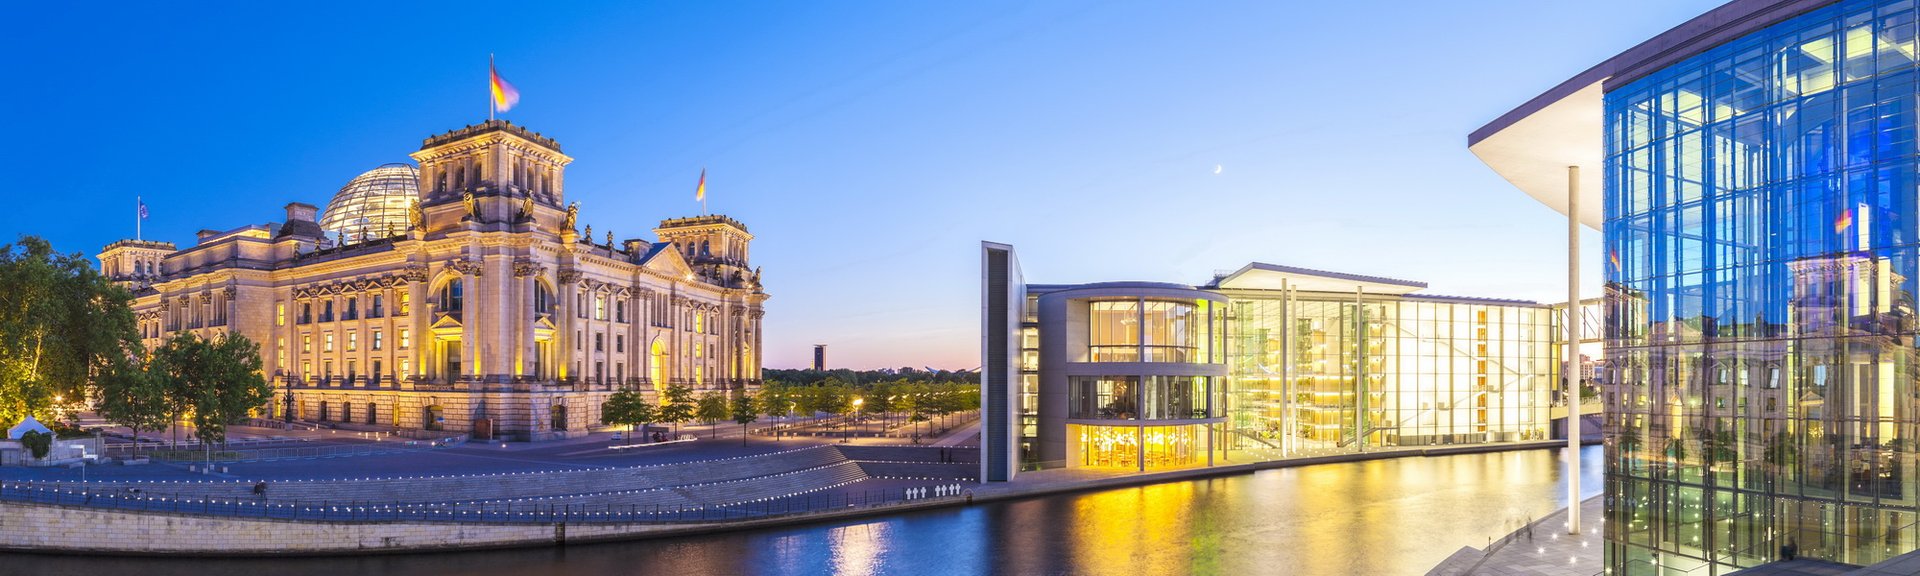 Berlin i detalj – Berlin-Mitte i korthet